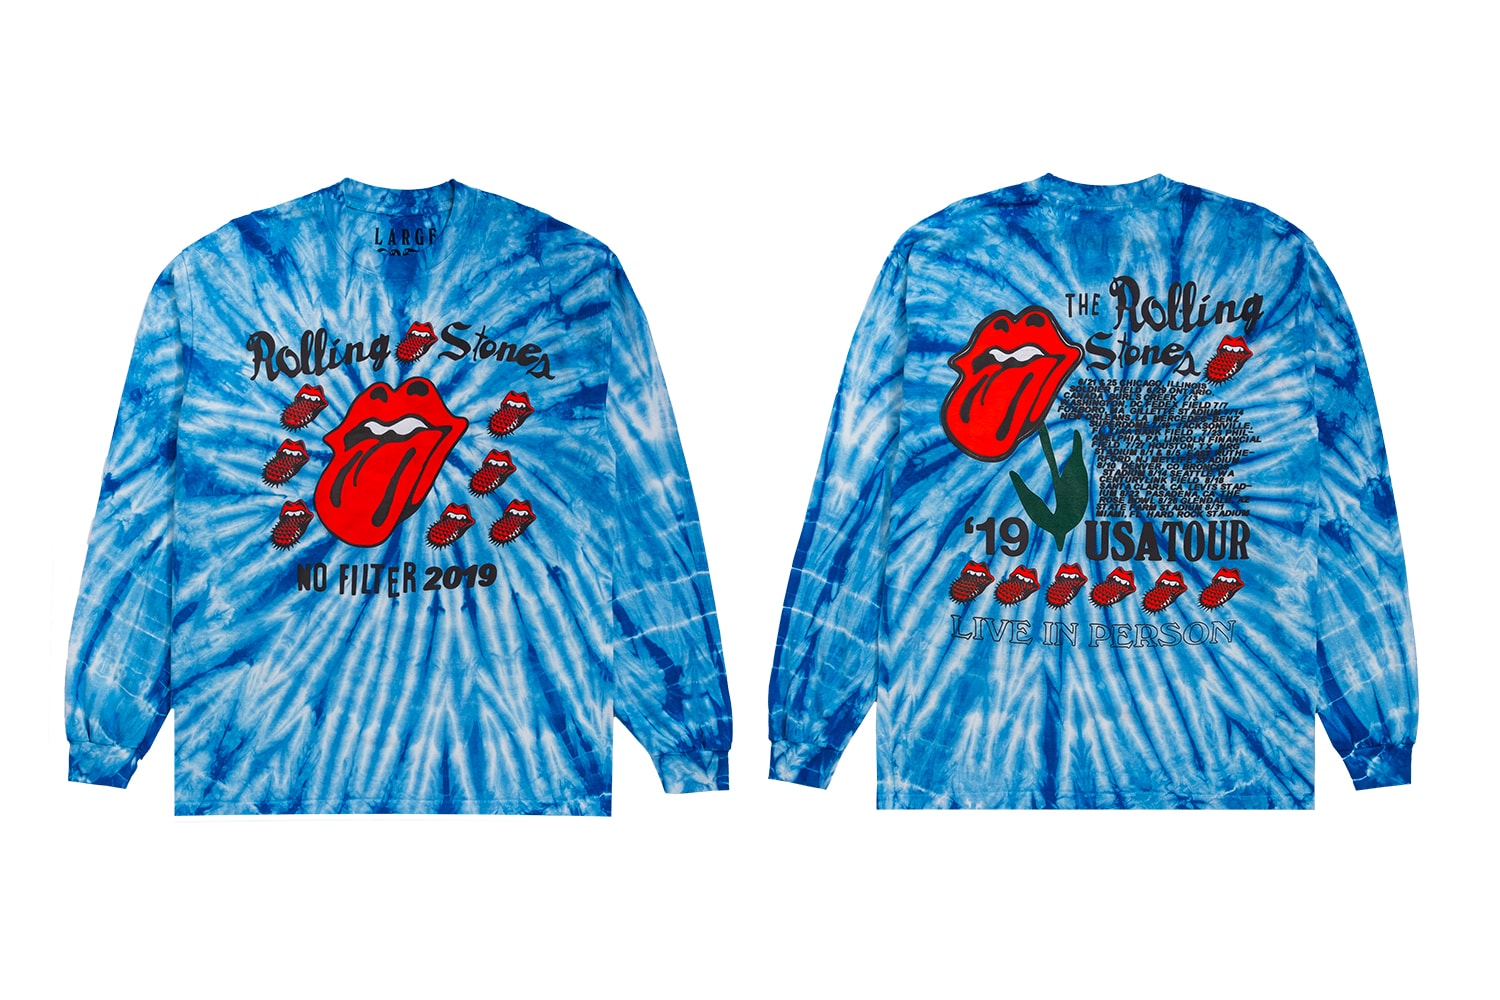 The Rolling Stones Cactus Plant Flea Market No Filter US Tour Capsule Crewneck T shirt